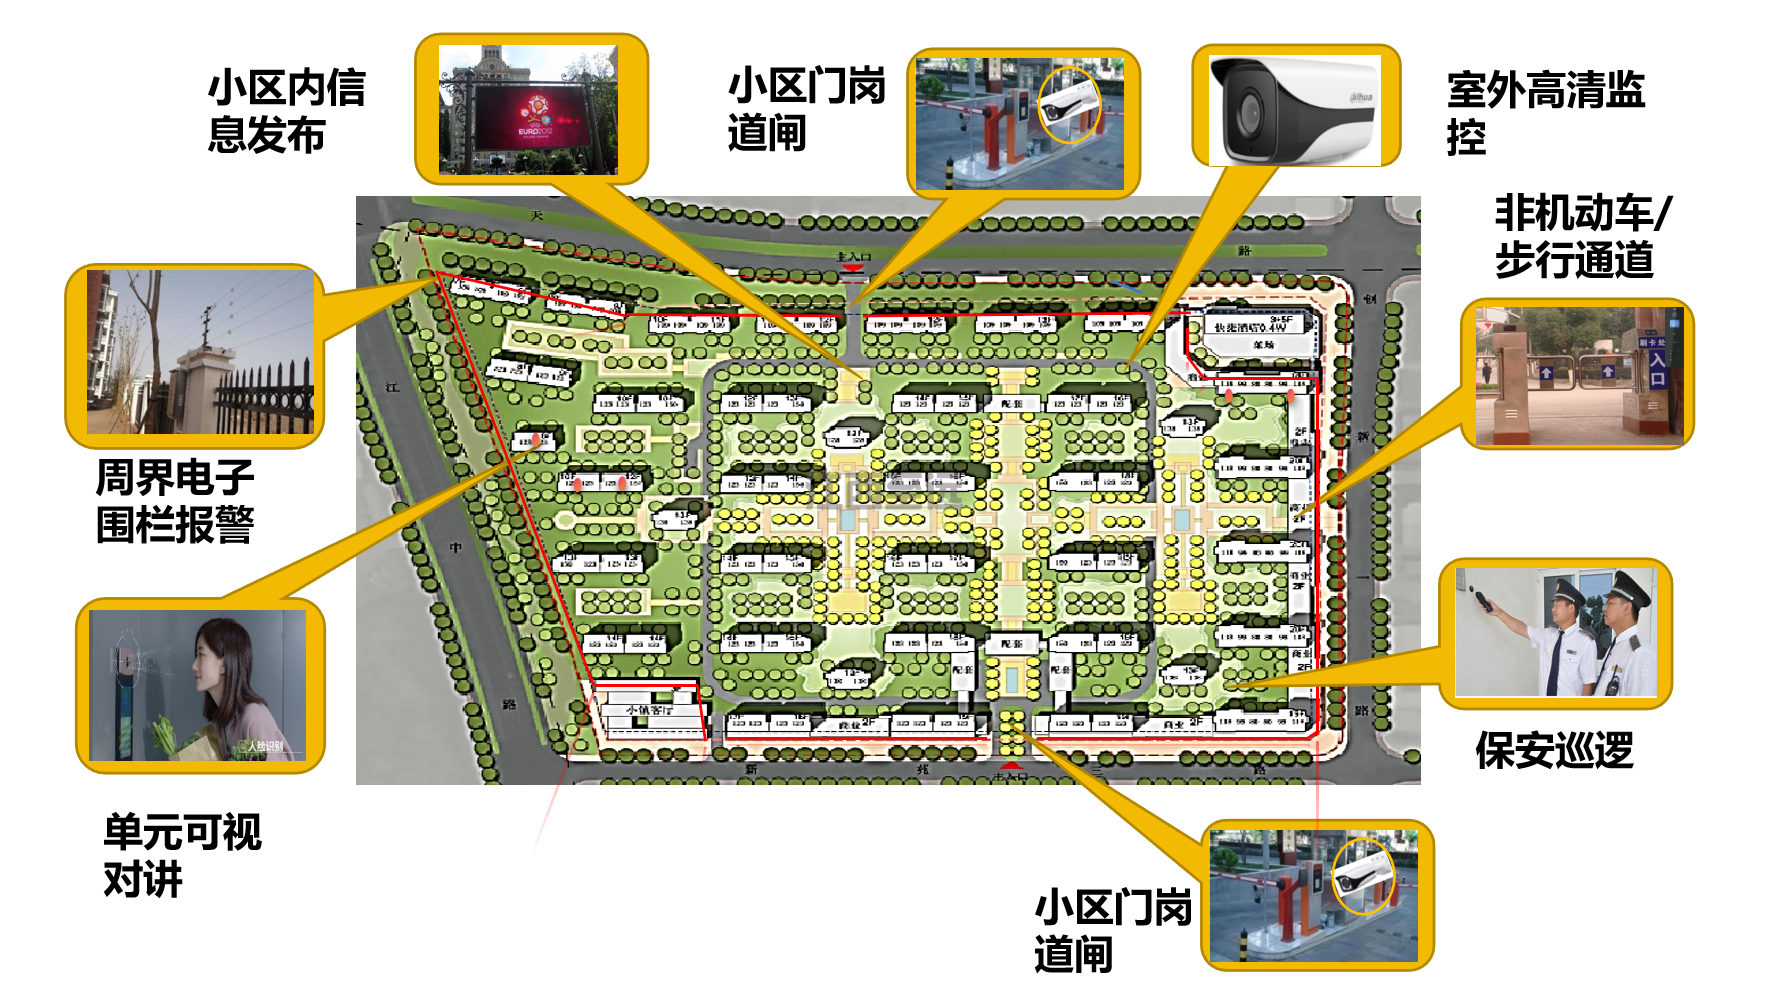 江西至遠-智慧社區/小(xiǎo)區建設解決方案(圖5)